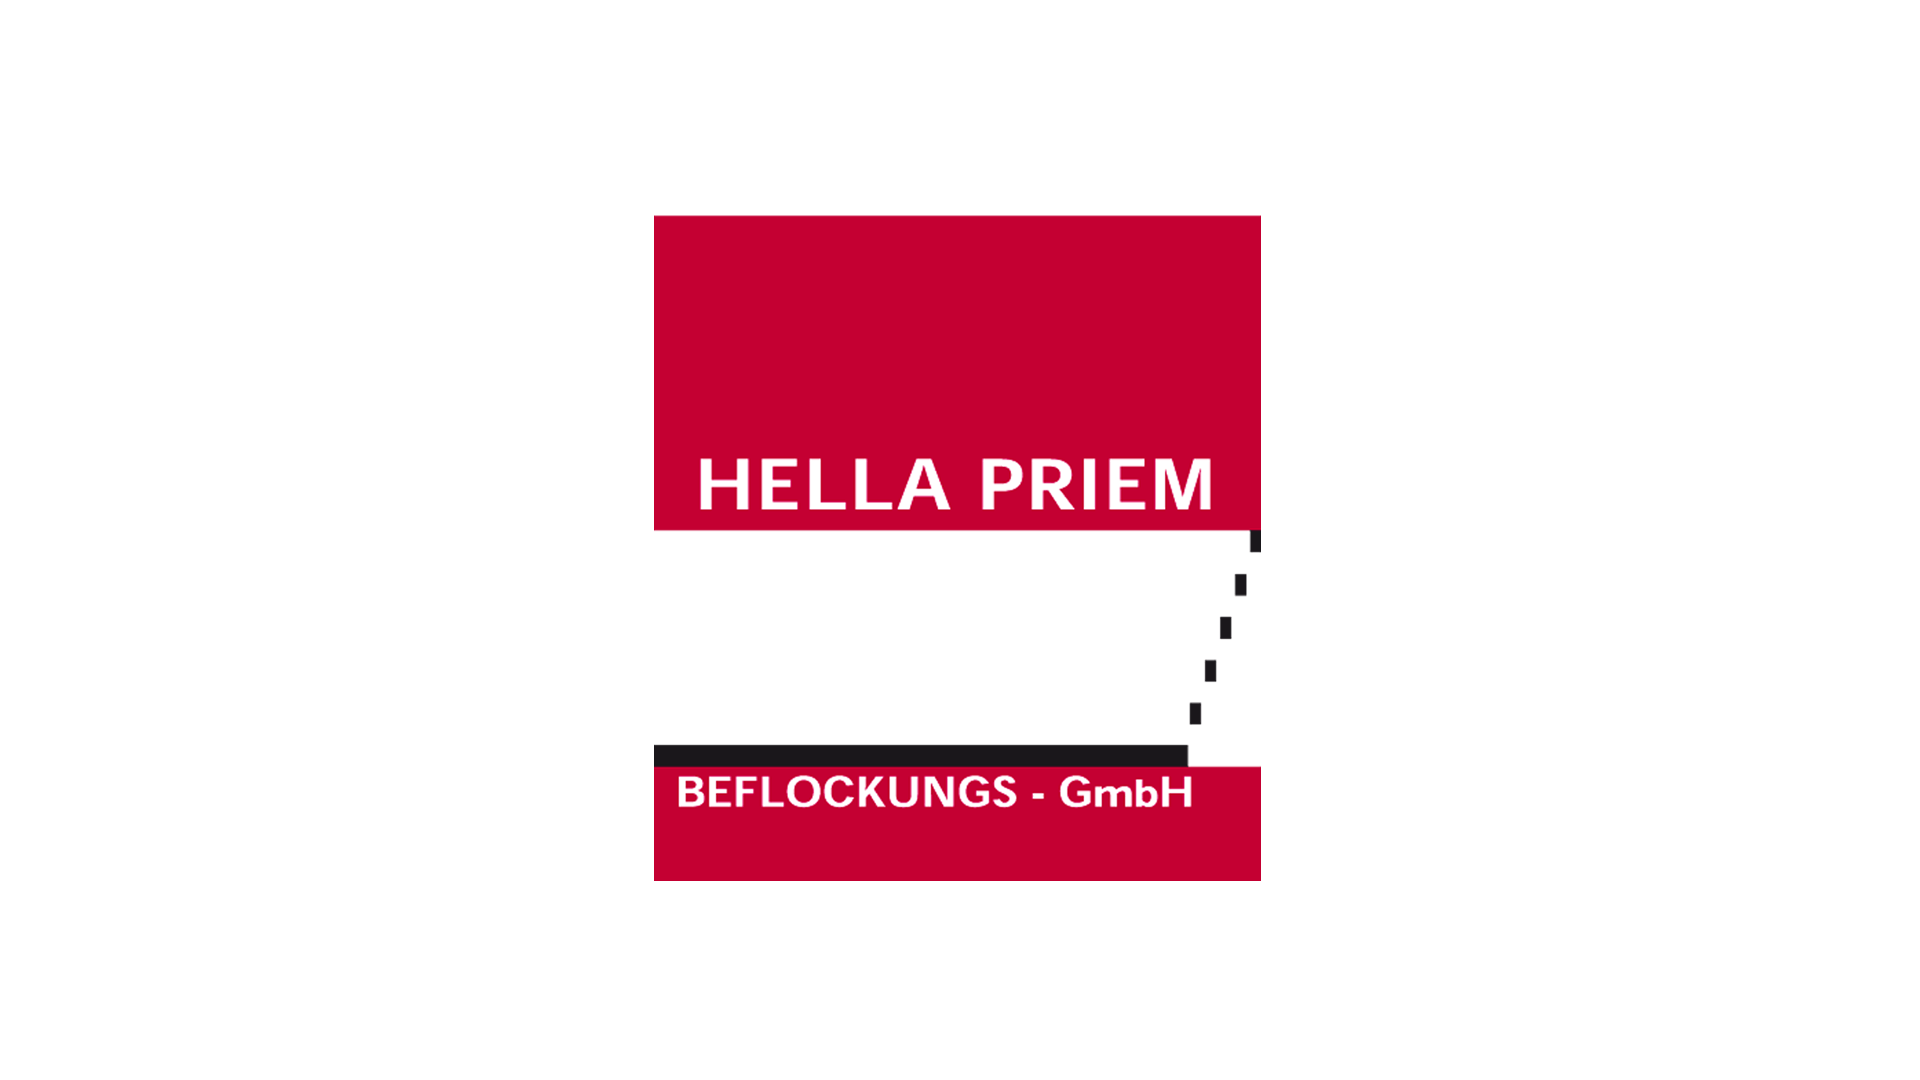 Hella Priem Geflockungs-GmbH, Oberflächenveredelung: Logo, Geschäftspapiere